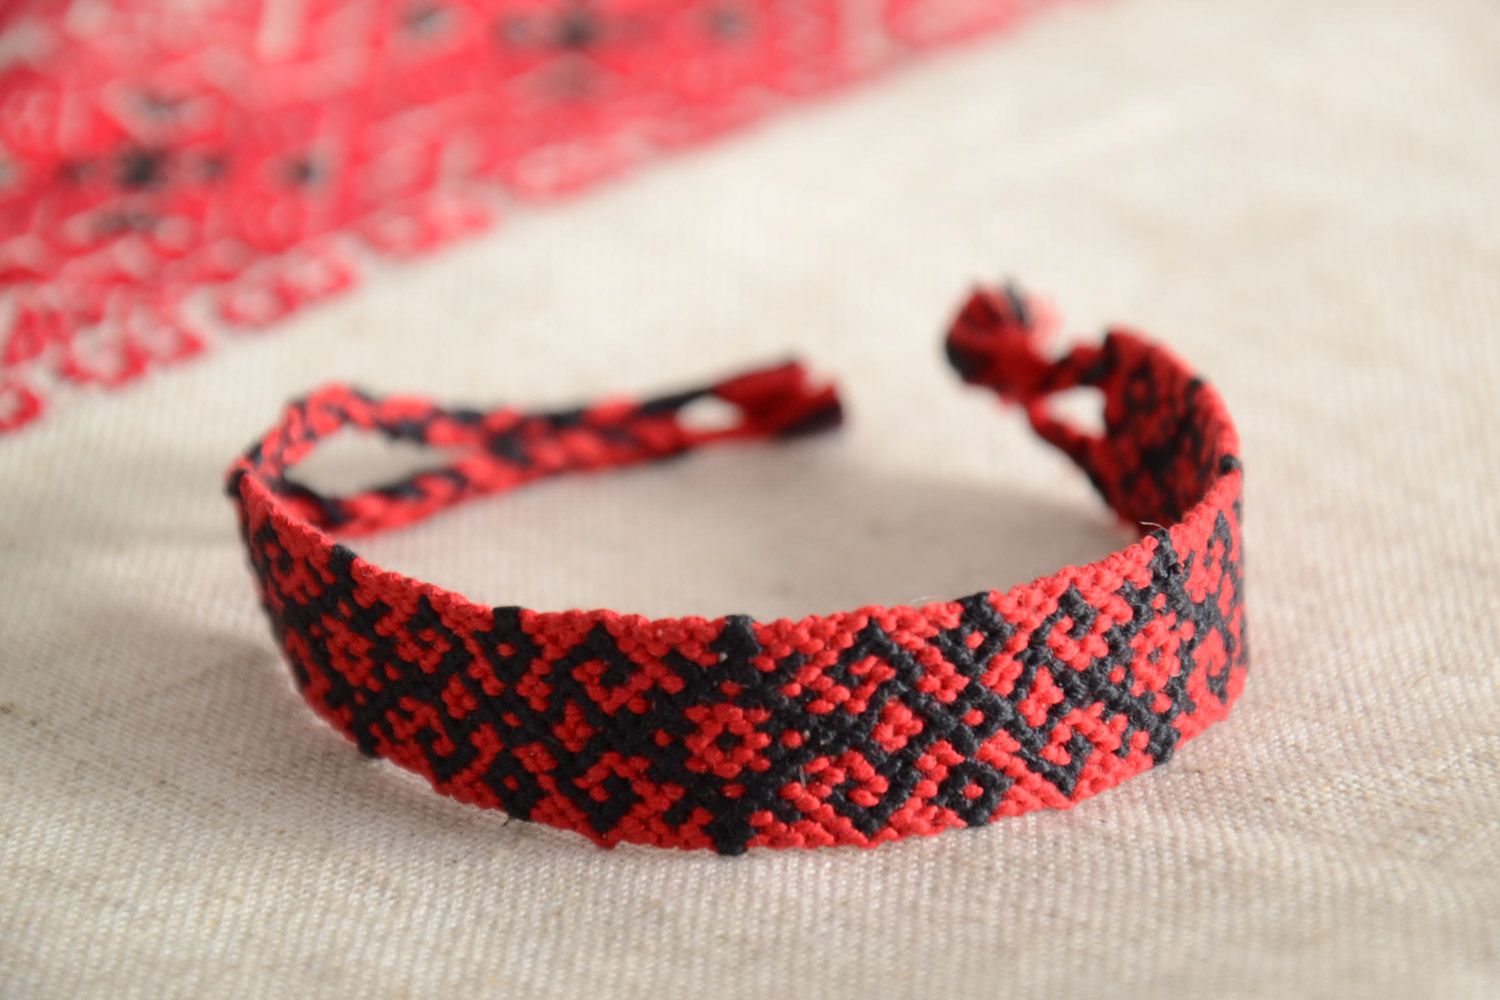 Текстильный браслет из ниток наручный красный с черным орнаментом ручная работа фото 1